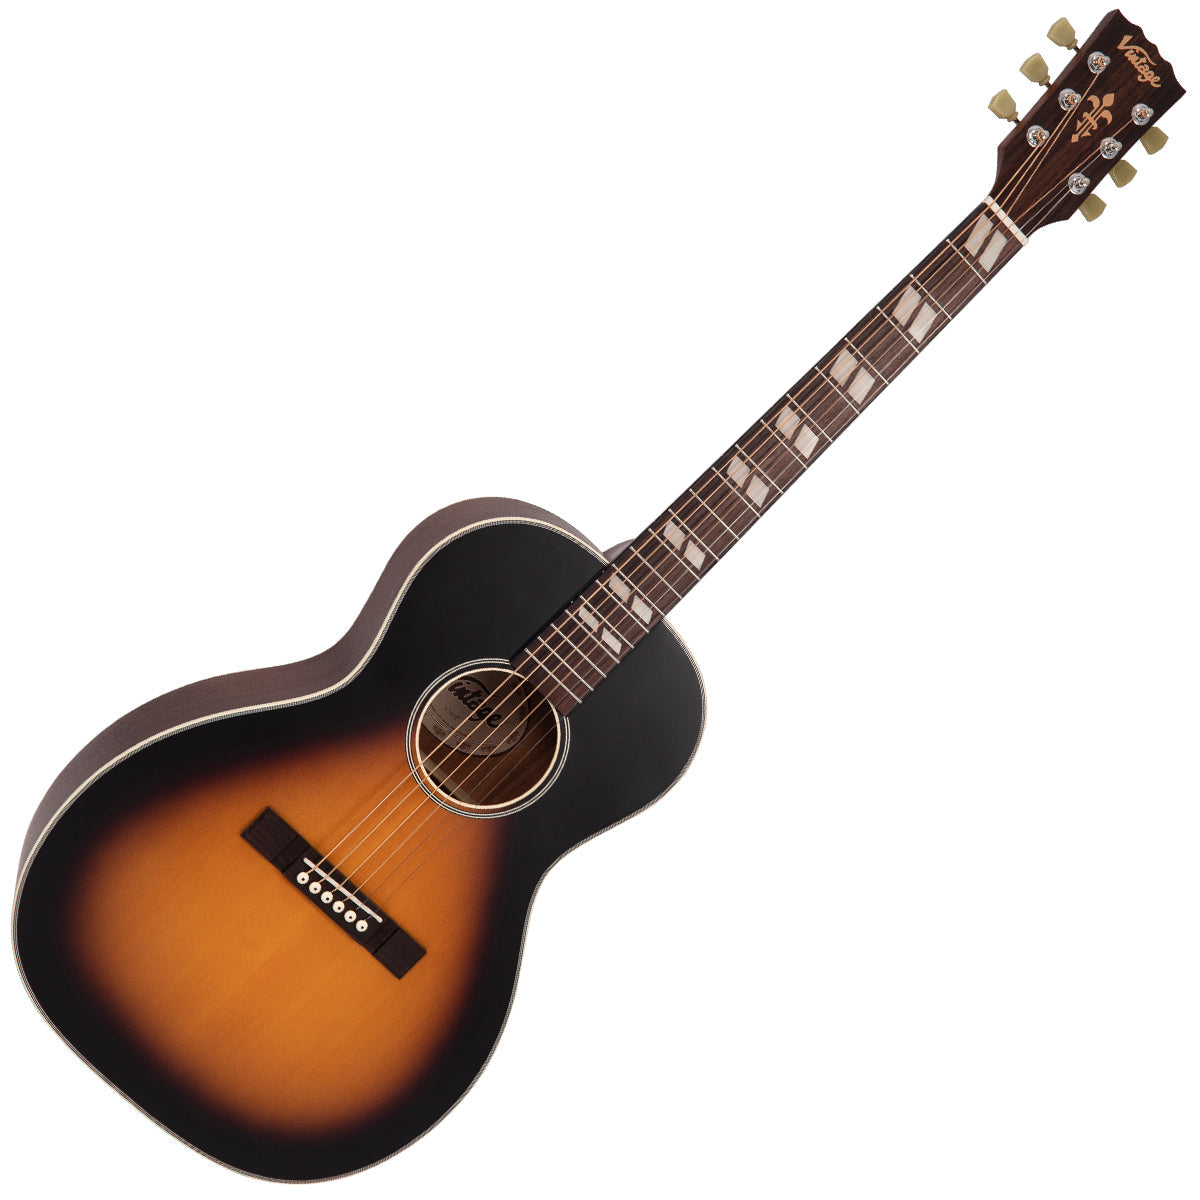 Vintage Historic Series 'Parlour' Acoustic Guitar ~ Vintage Sunburst